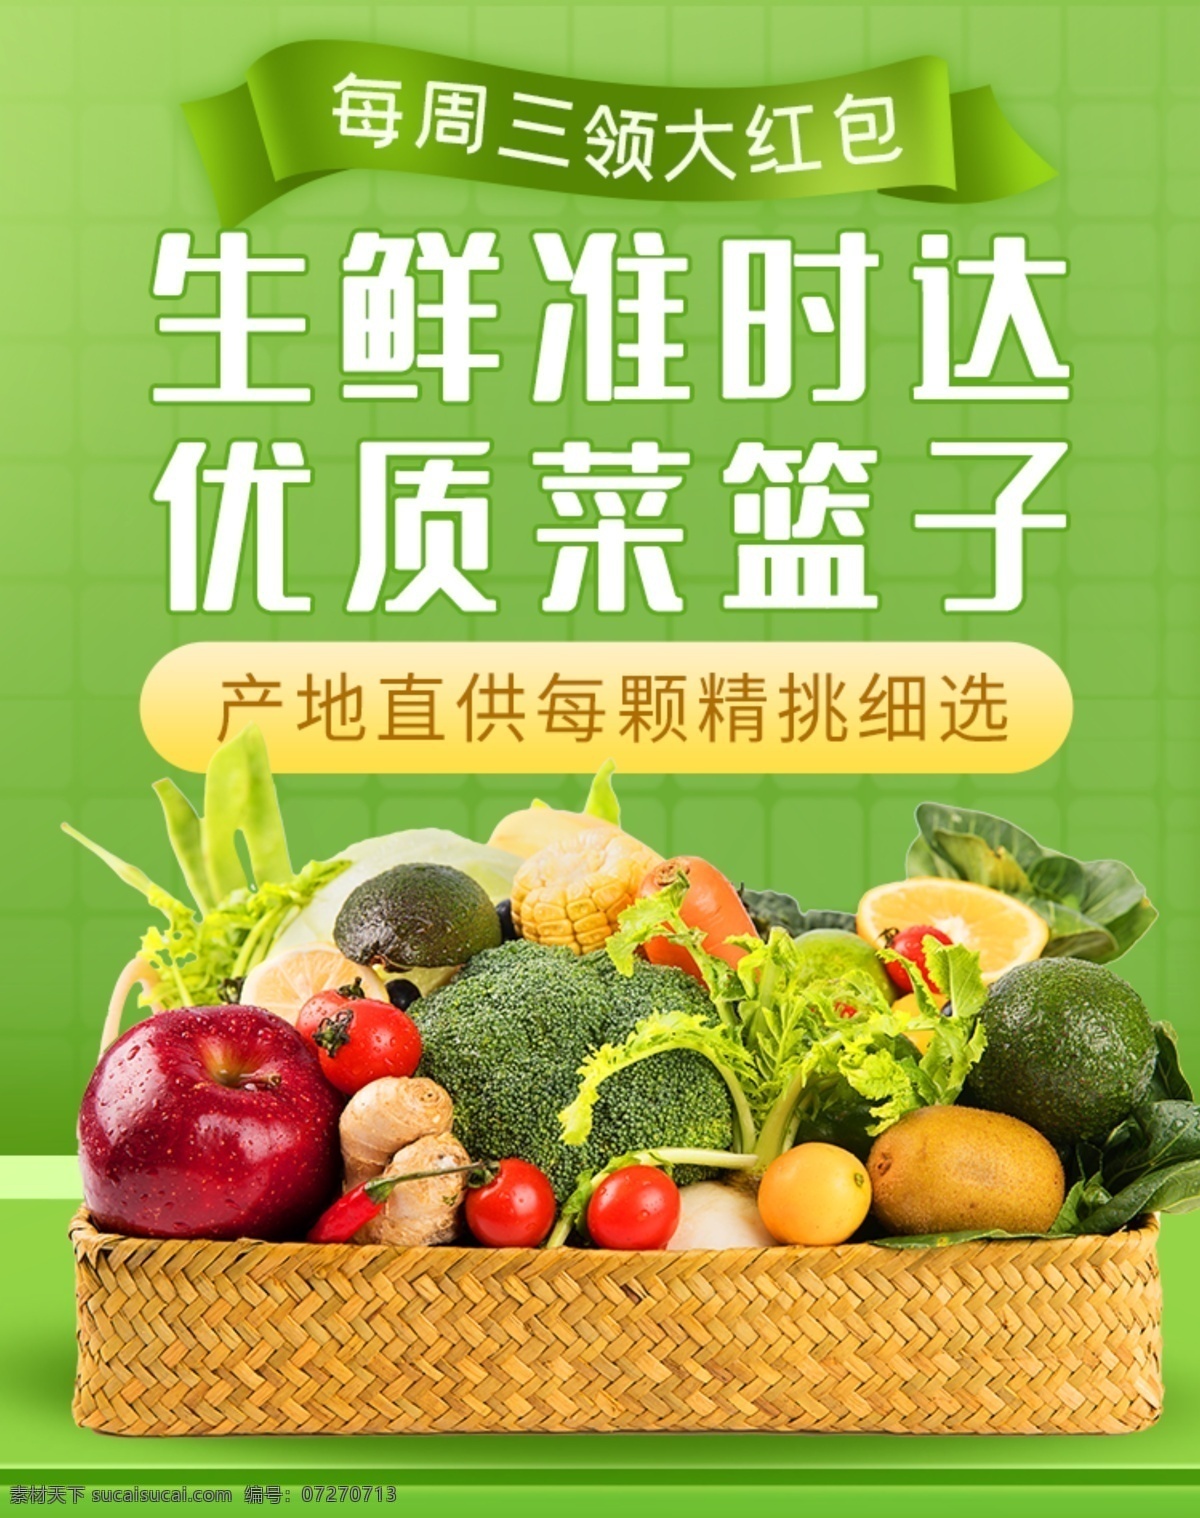 水果生鲜海报 绿色食品 水果生鲜 果蔬 海报 超市海报 超市果蔬 果蔬促销 水果蔬菜 水果 蔬菜 优惠促销 促销海报 果蔬行业 分层